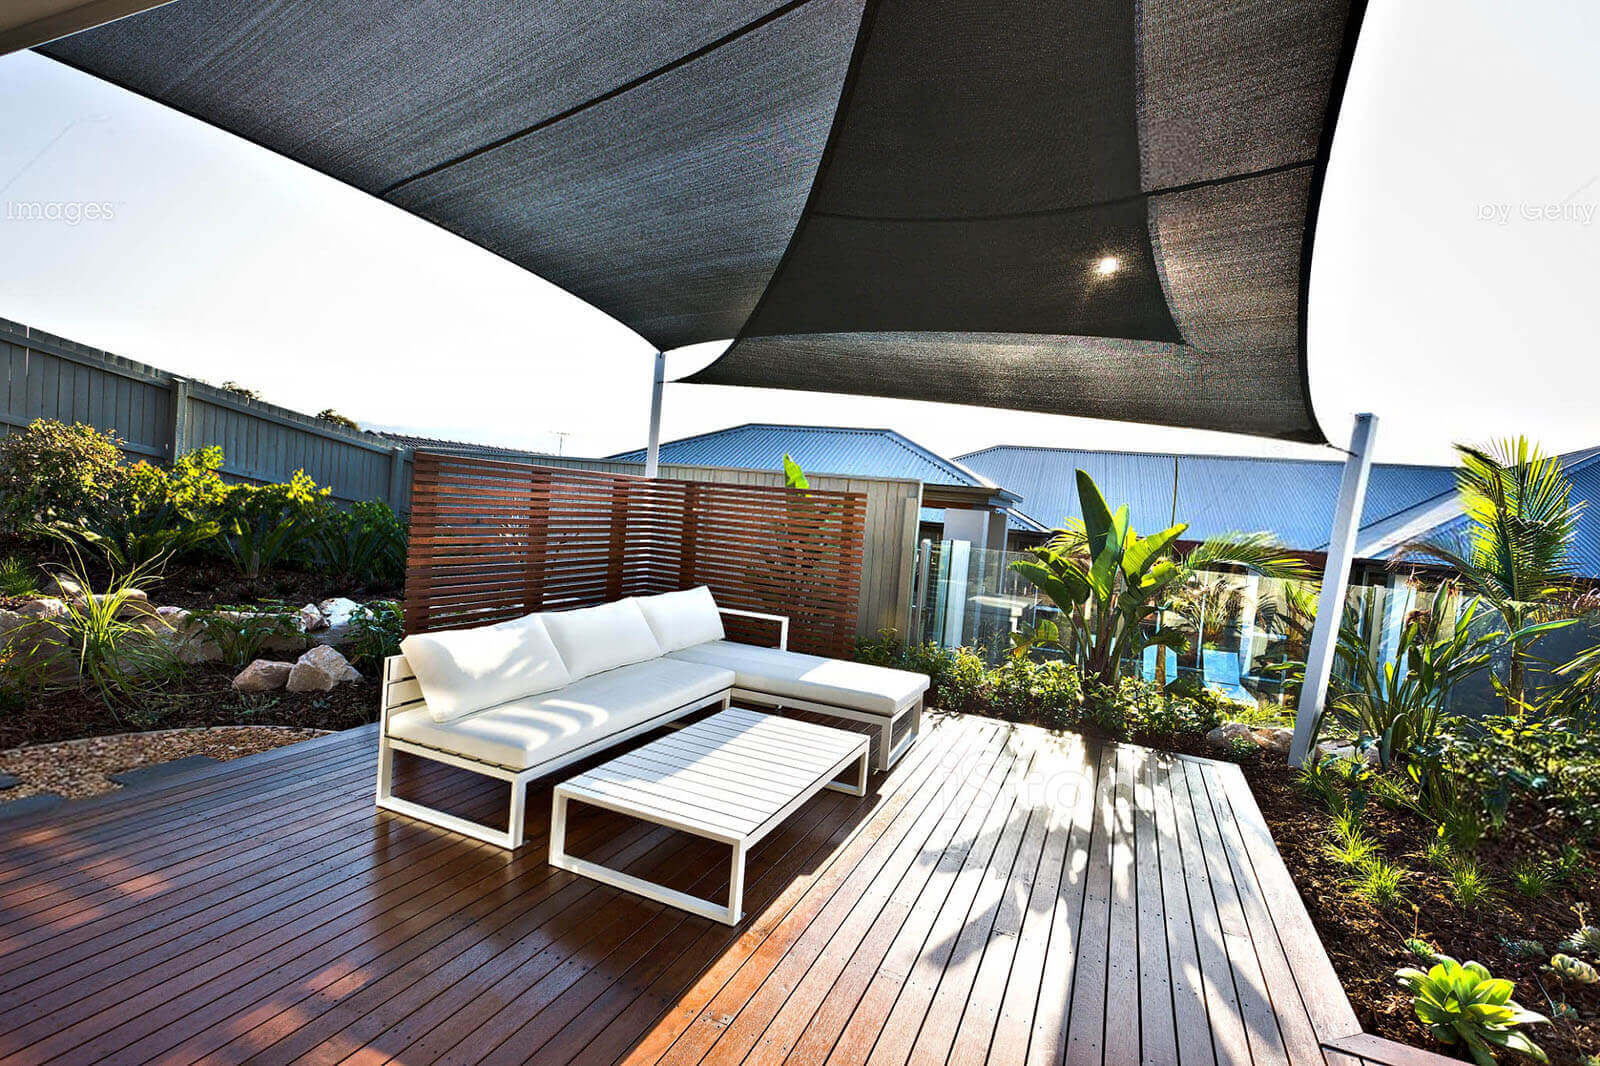 Terrasse mit aufgespannten Tüchern bzw. Sonnensegeln als Sonnenschutz